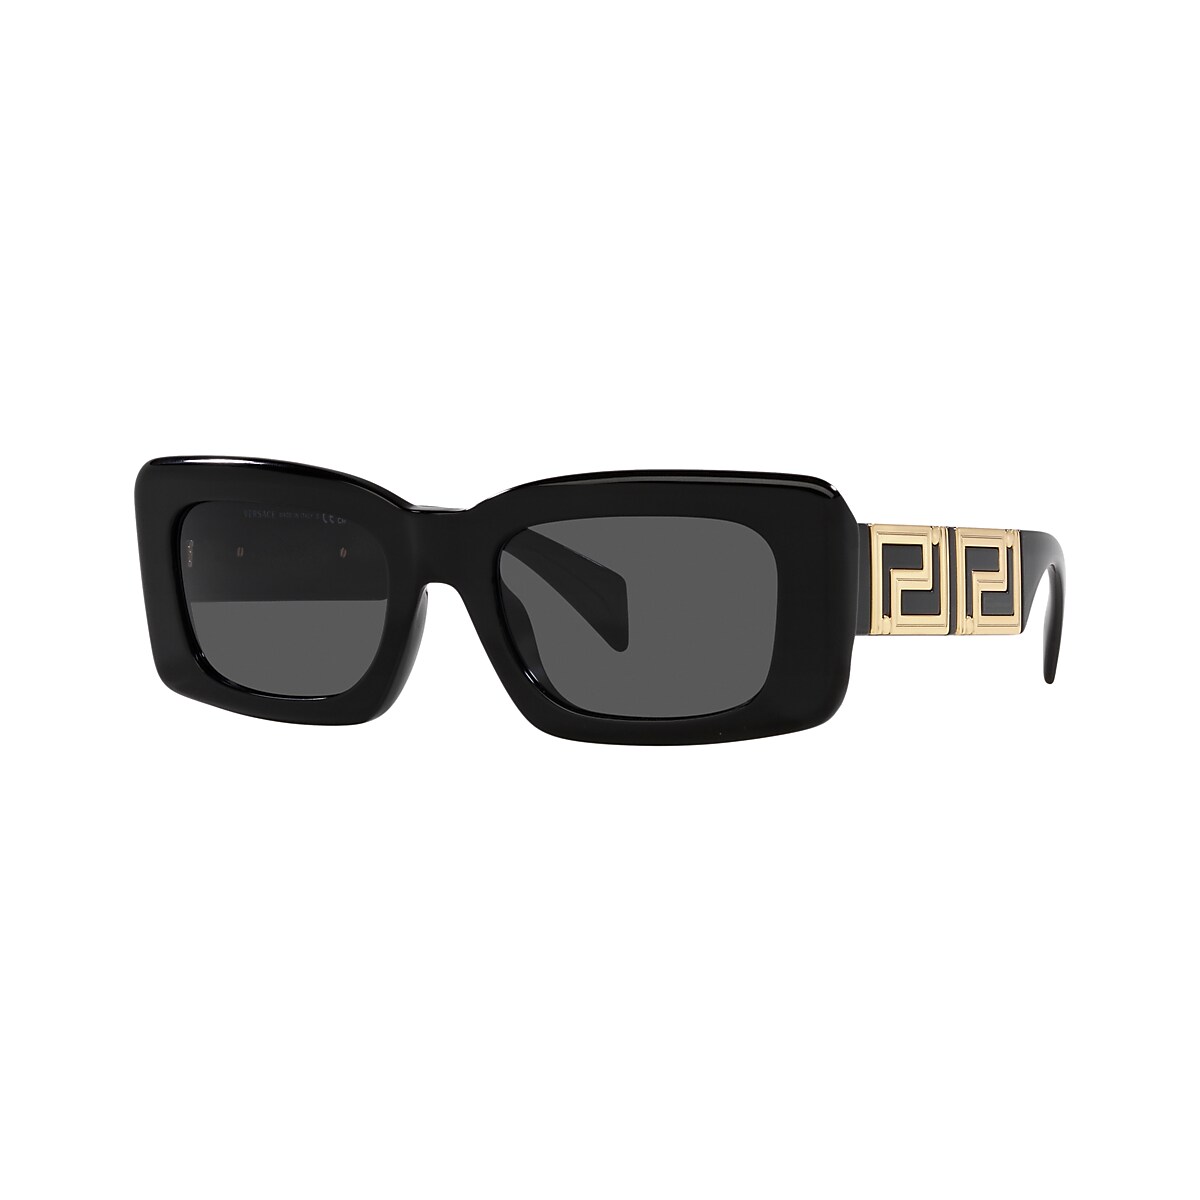 VERSACE VE4444U Black - Woman Luxury Sunglasses, Dark Grey Lens